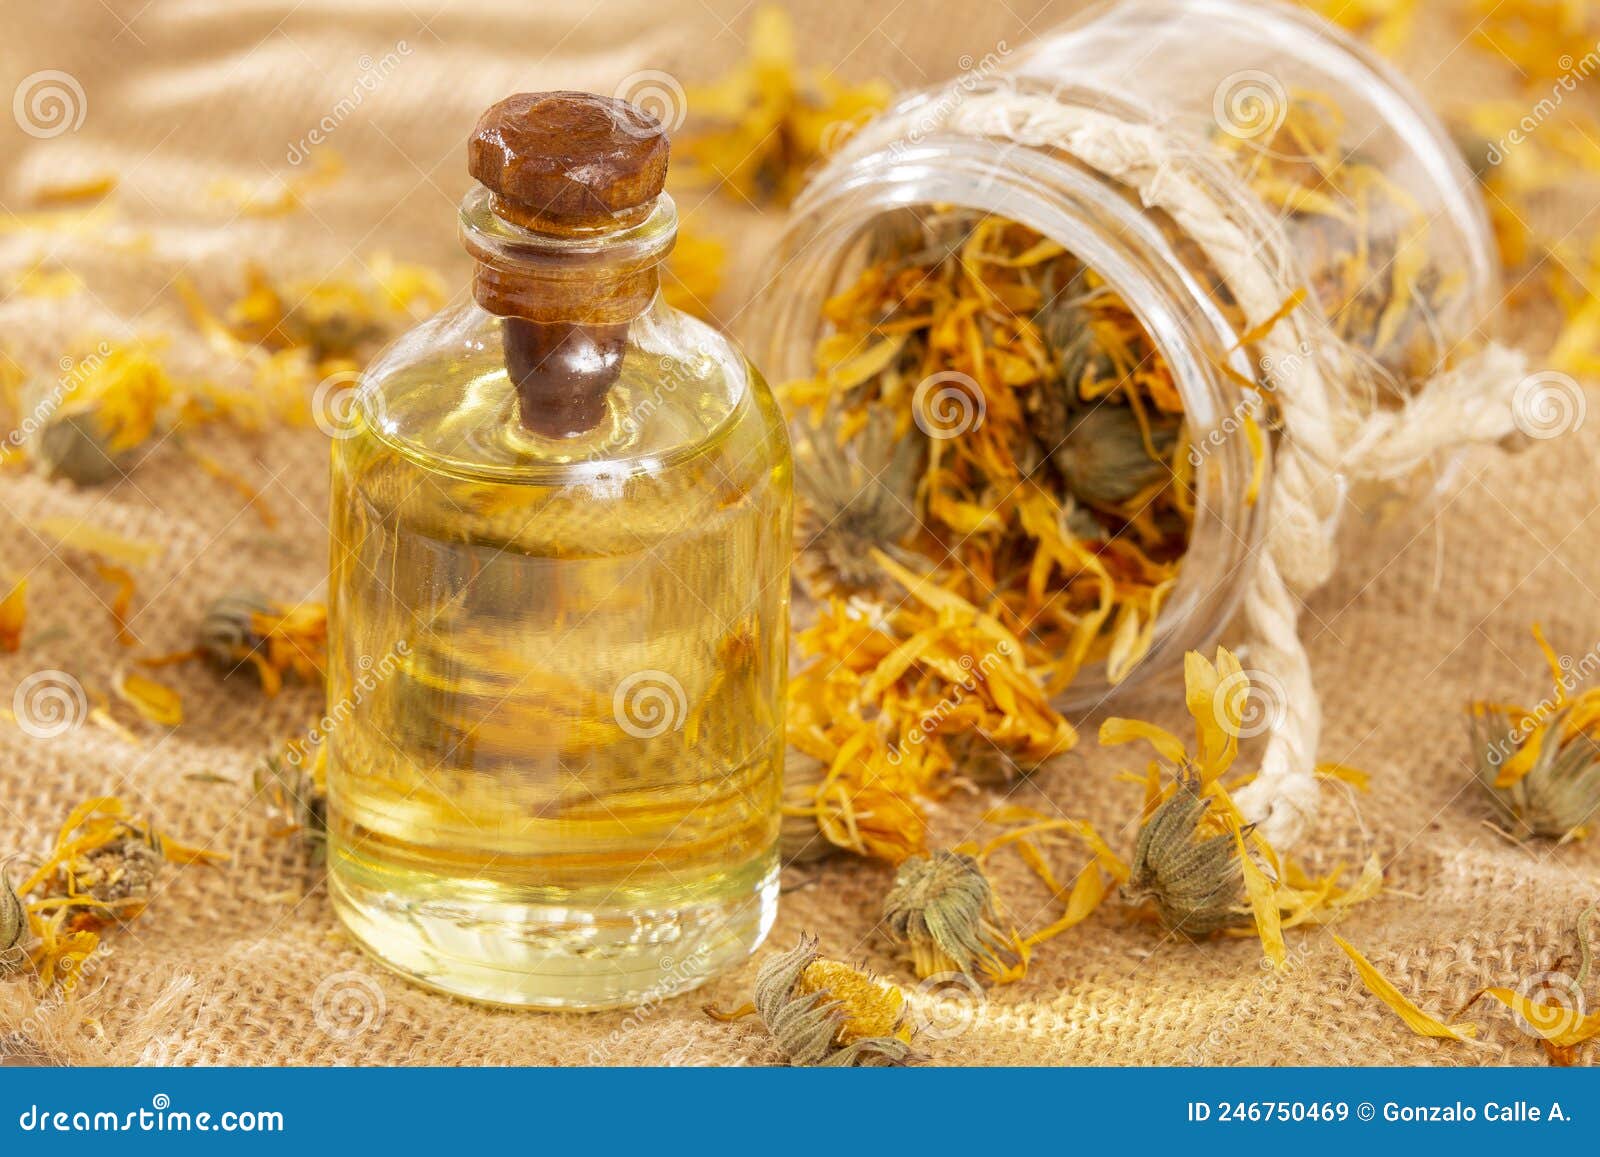 calendula officinalis - calendula oil in a glass bottle